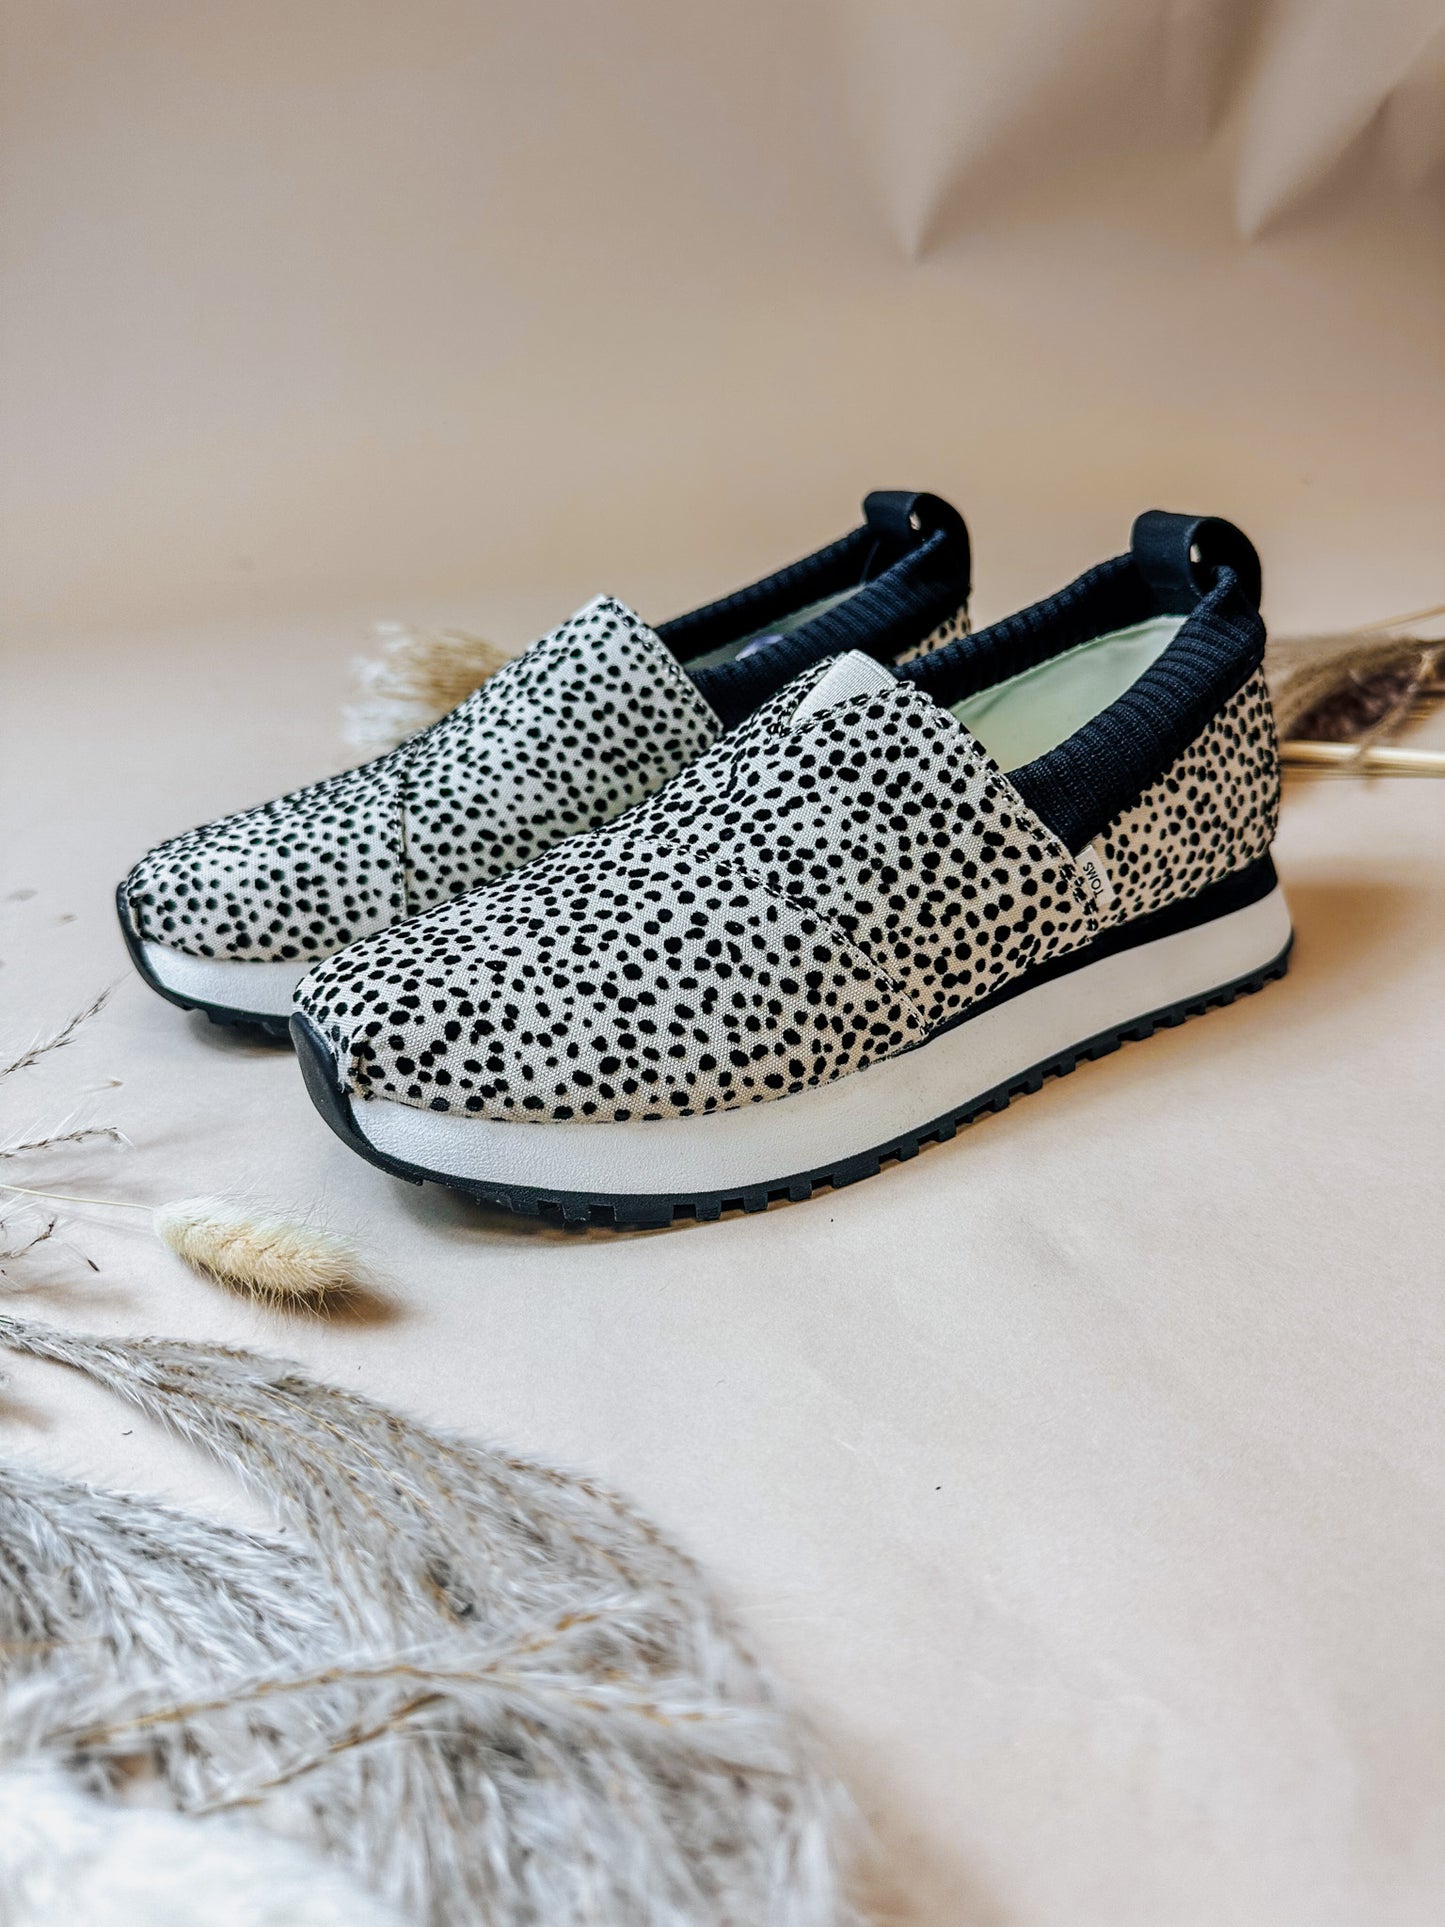 Women Alpargata Resident 2.0 Mini Cheetah Sneaker By Toms